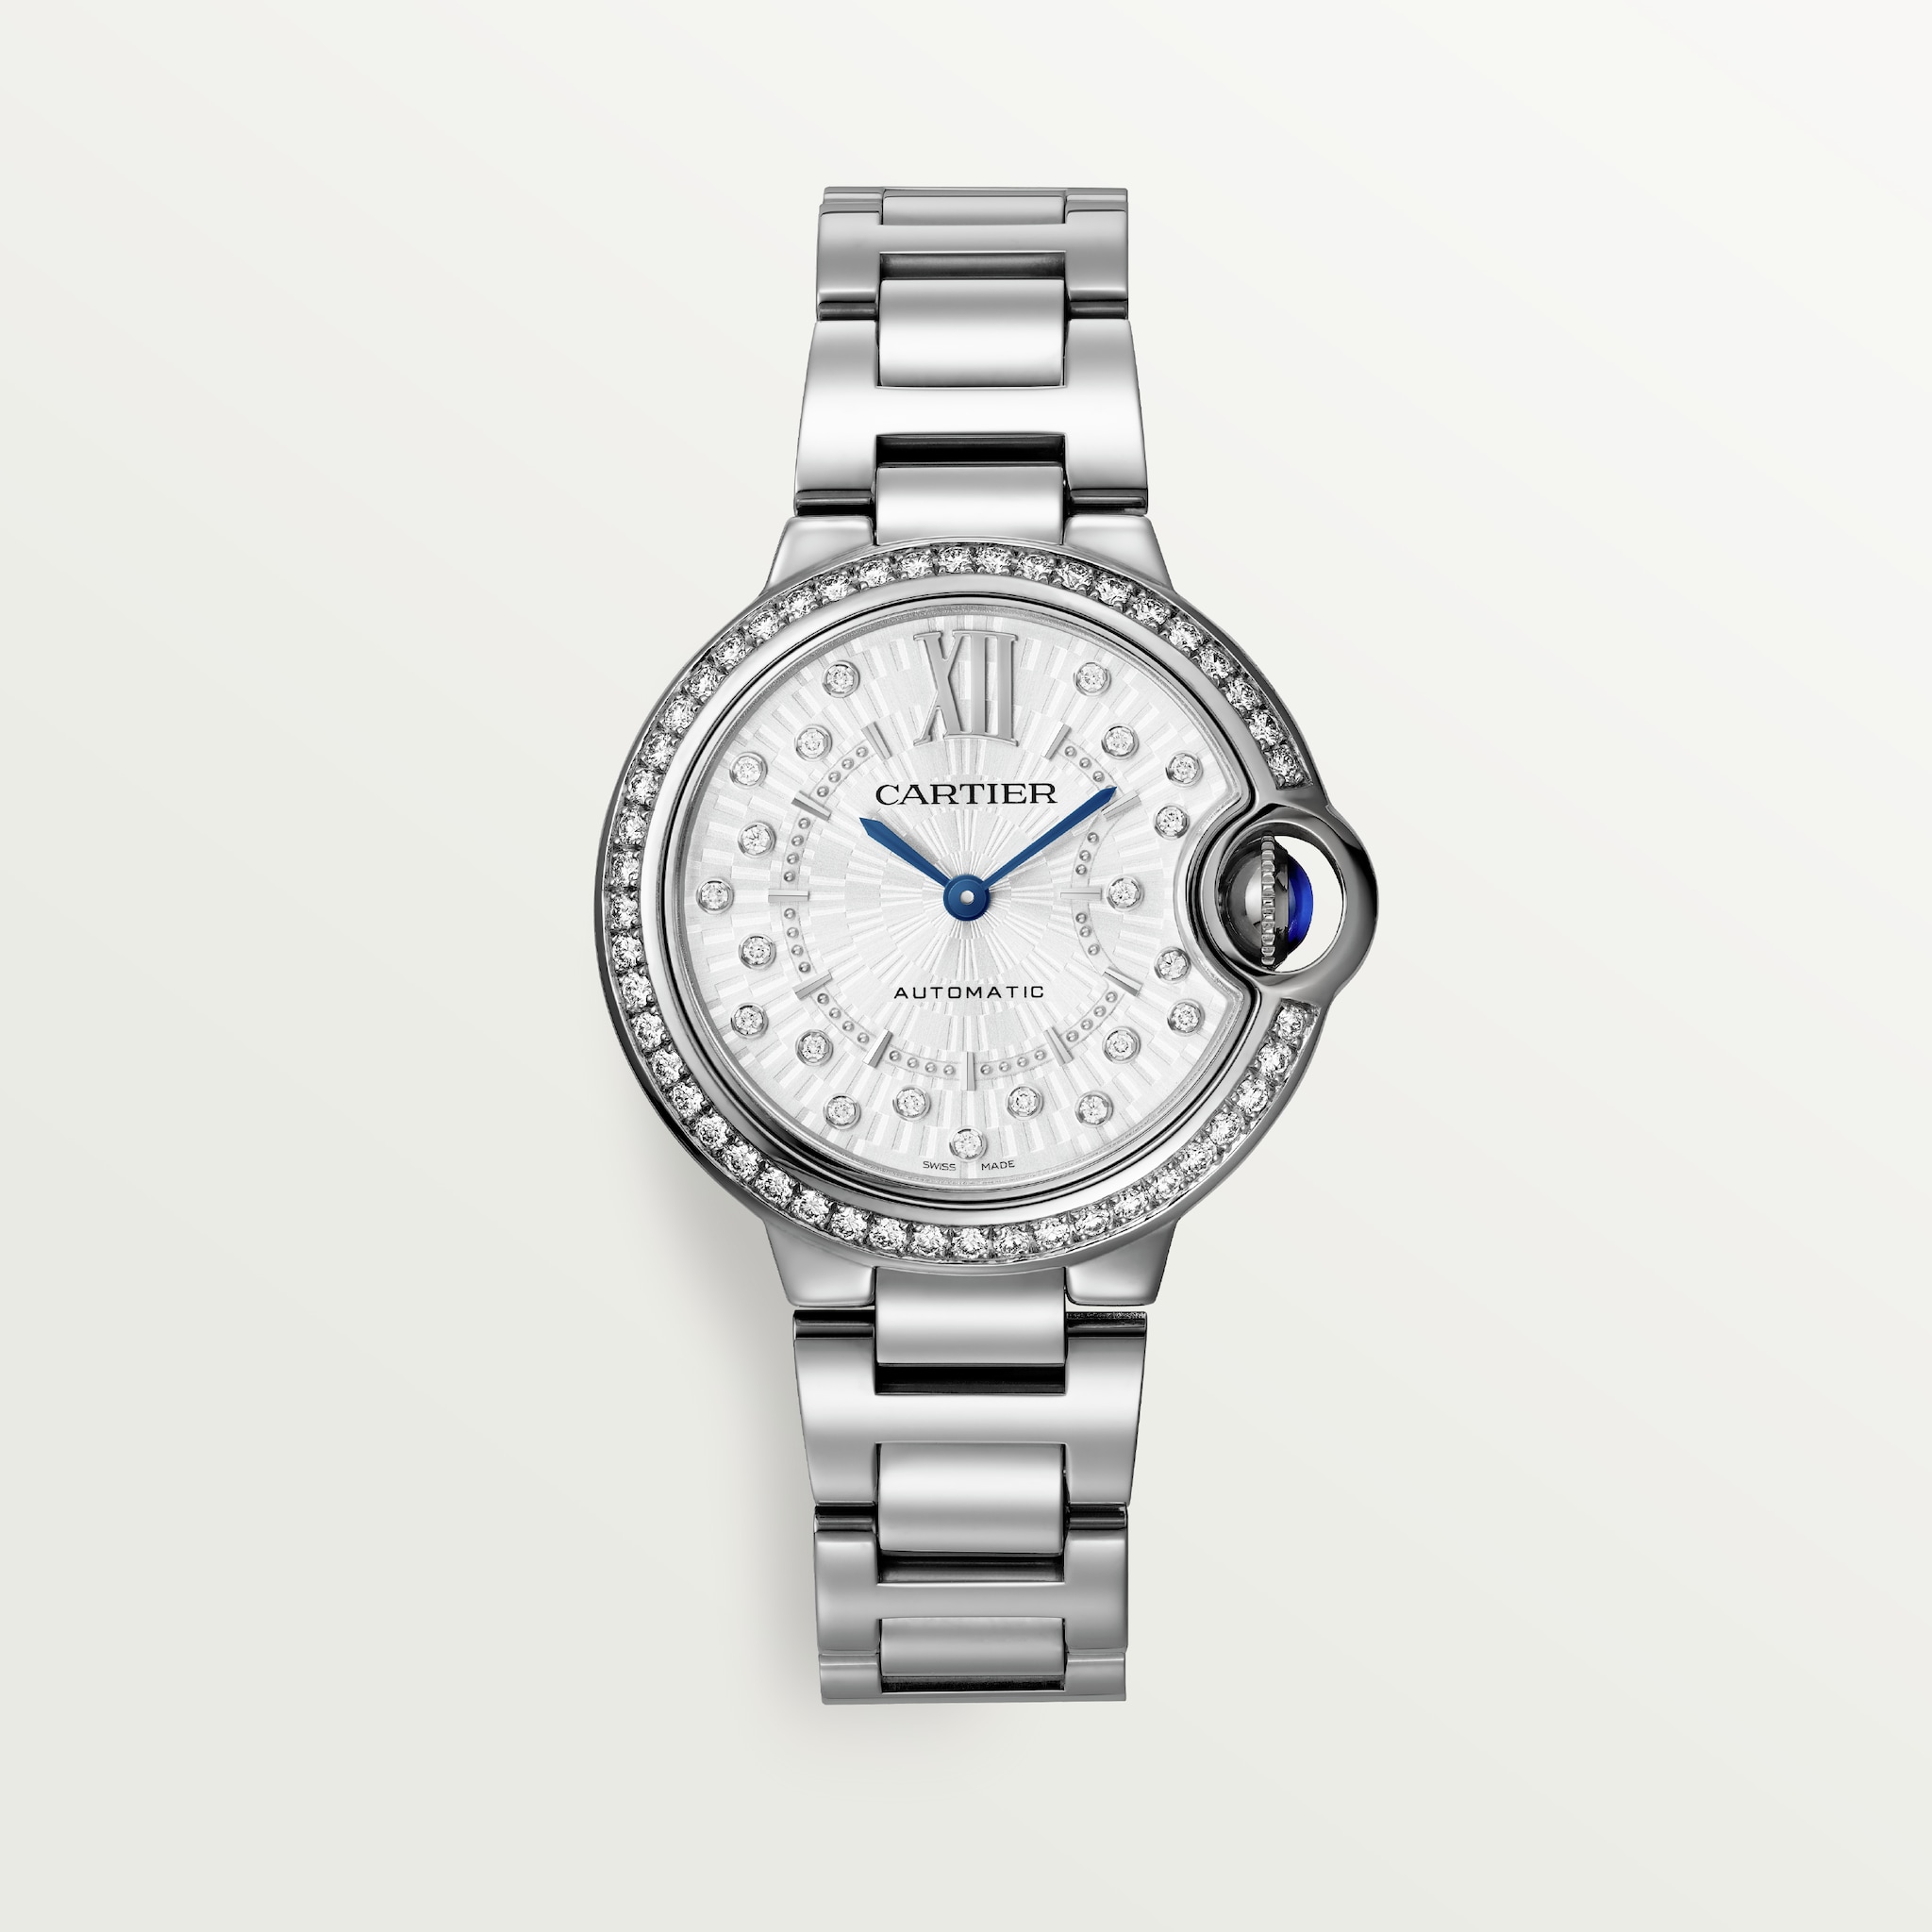 Ballon Bleu de Cartier watch33 mm, automatic mechanical movement, steel, diamonds